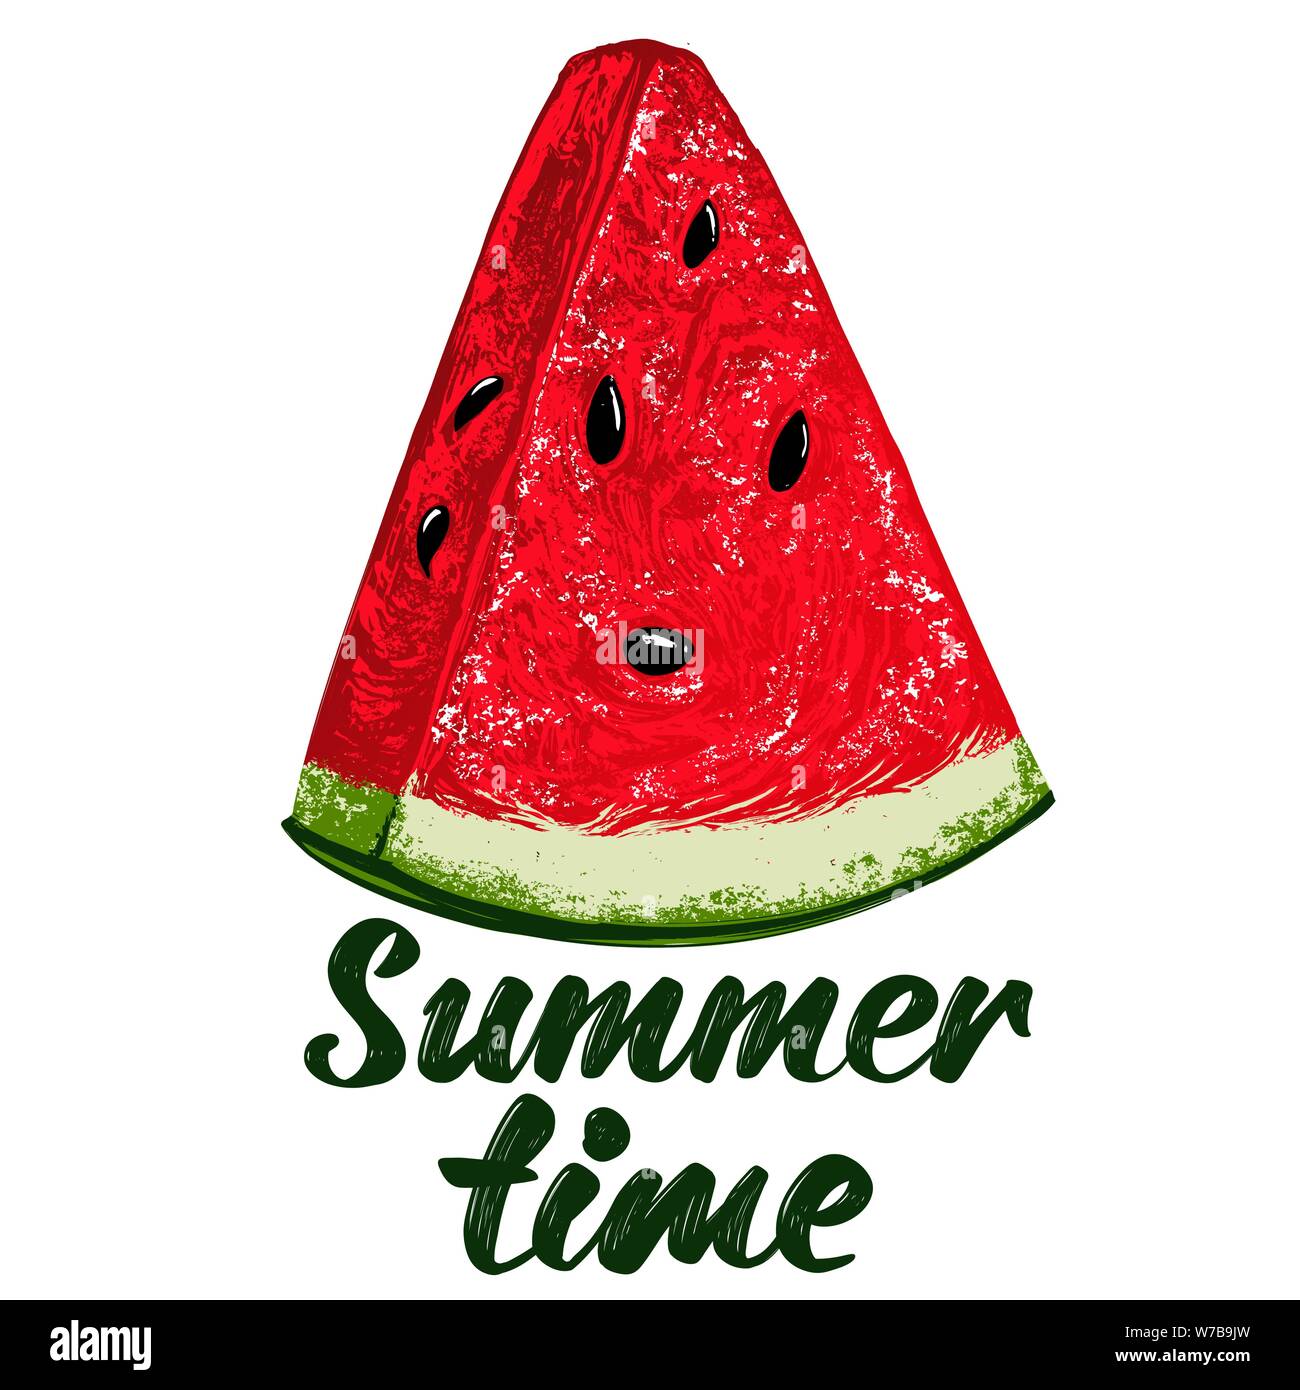 Obst Wassermelone, Logo, kalligraphische Text von Hand gezeichnet Vektor-illustration realistische Skizze Farbe Stock Vektor